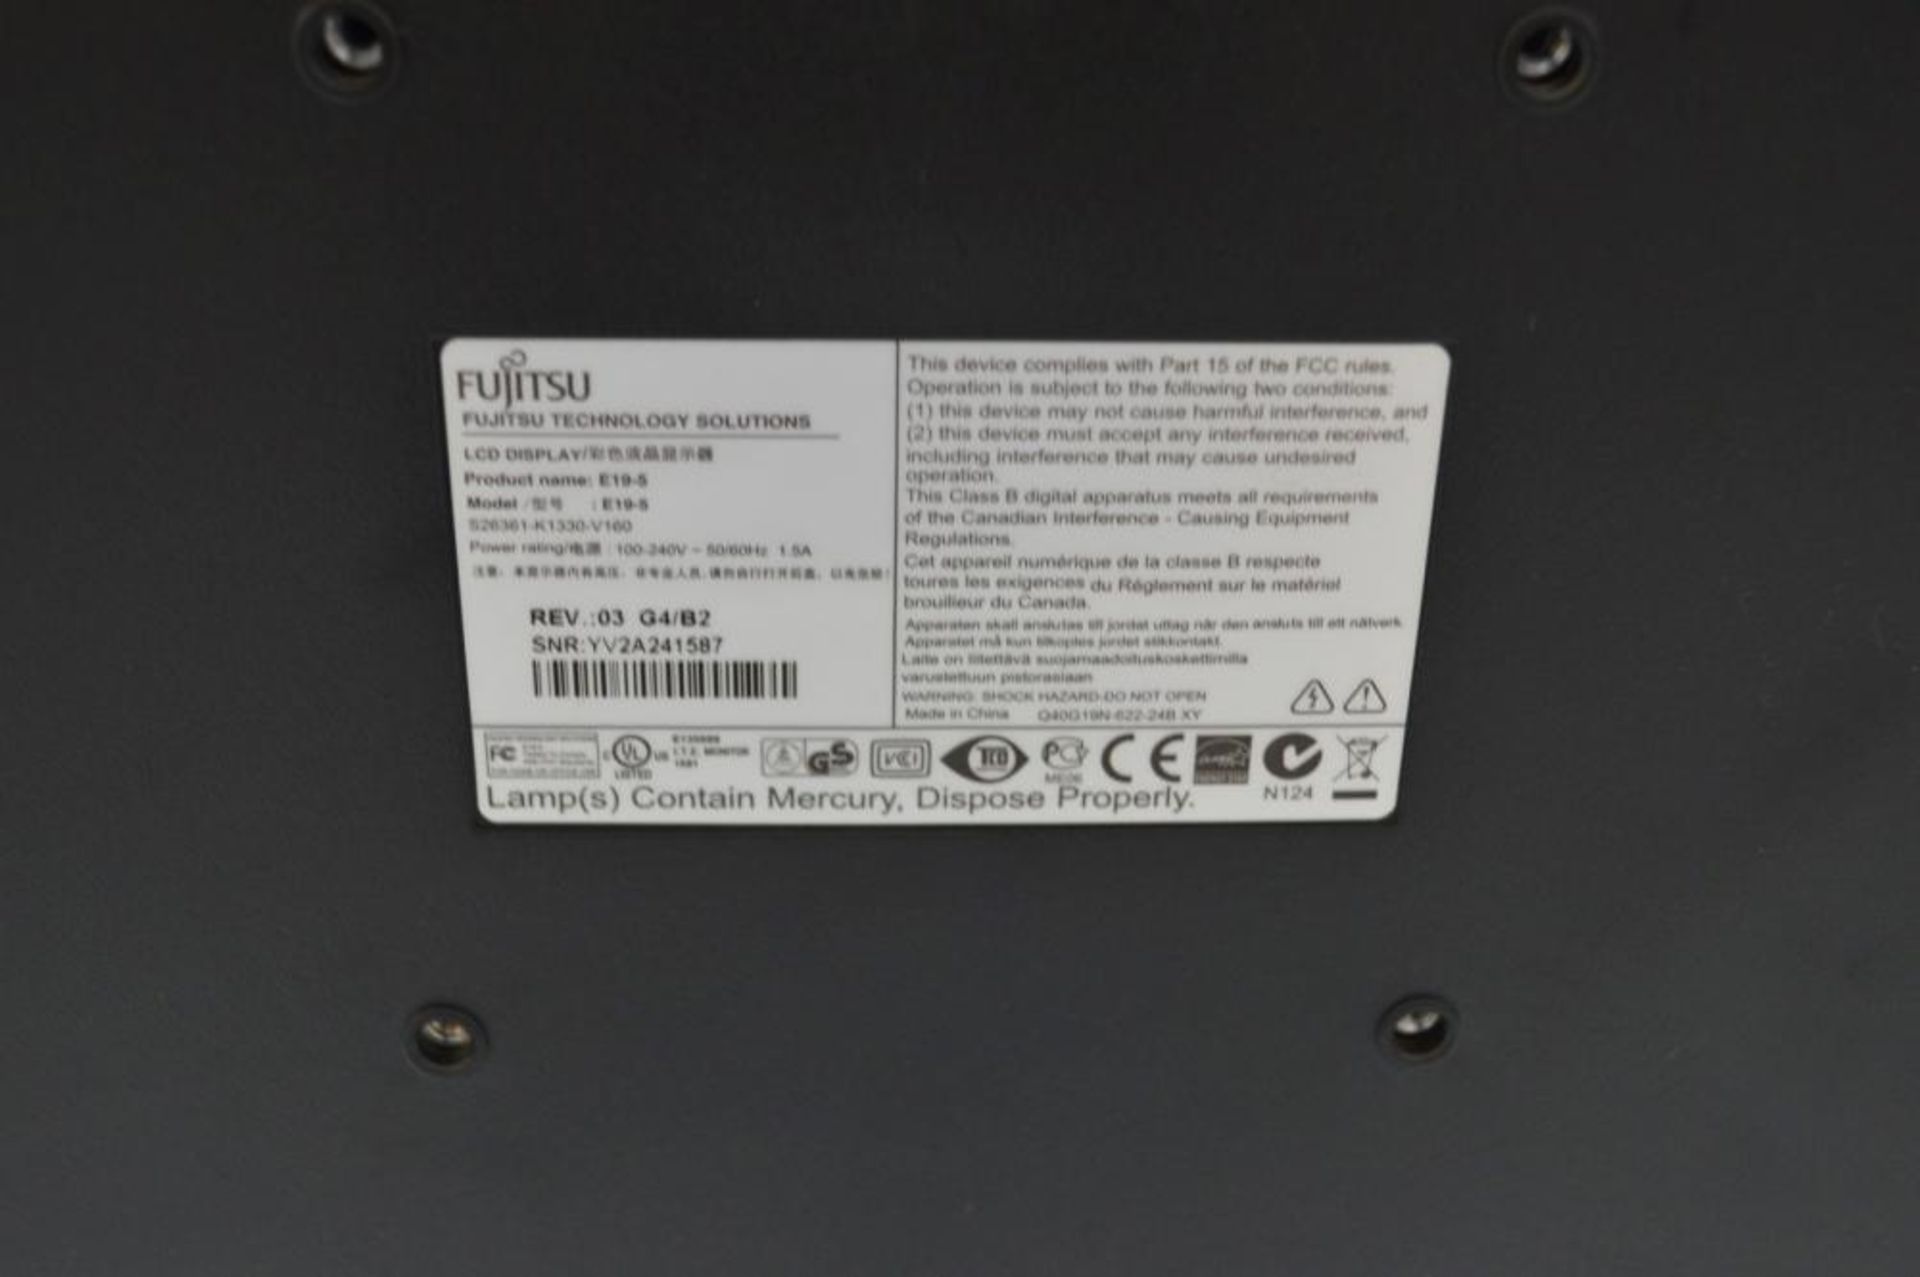 1 x Fujitsu E19-5 19-inch TFT LCD PC Monitor - Ref TP323 - CL394 - Location: Altrincham WA14 - HKPal - Image 3 of 3